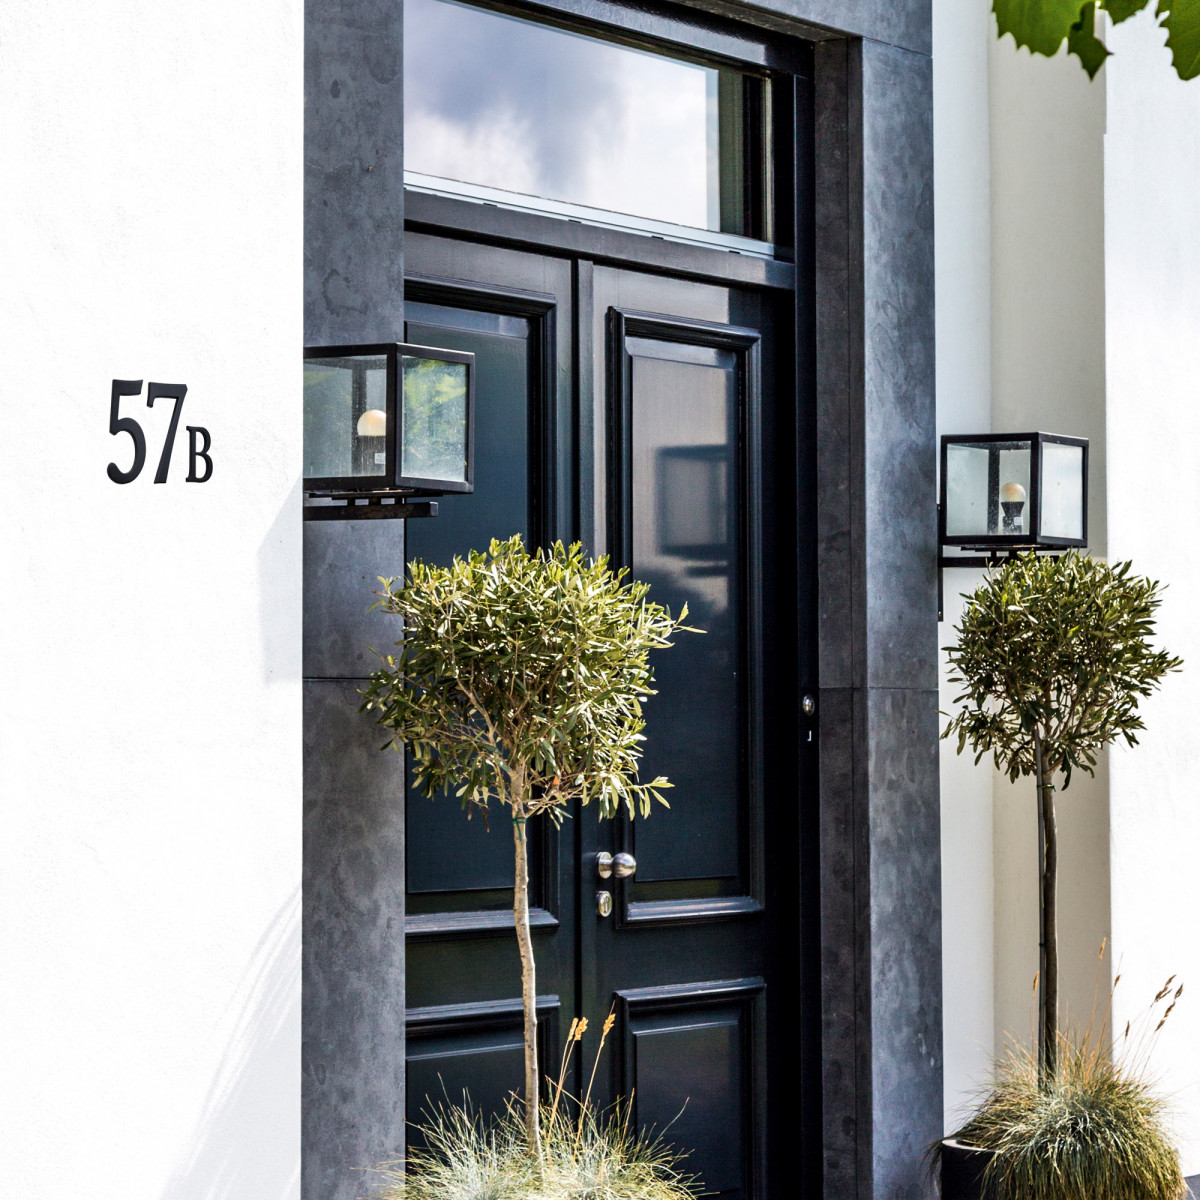 Grand numéro 1 de maison - montage invisible - numéros de maison en aluminium galvanisé - 19 cm de hauteur | Nostalux.fr